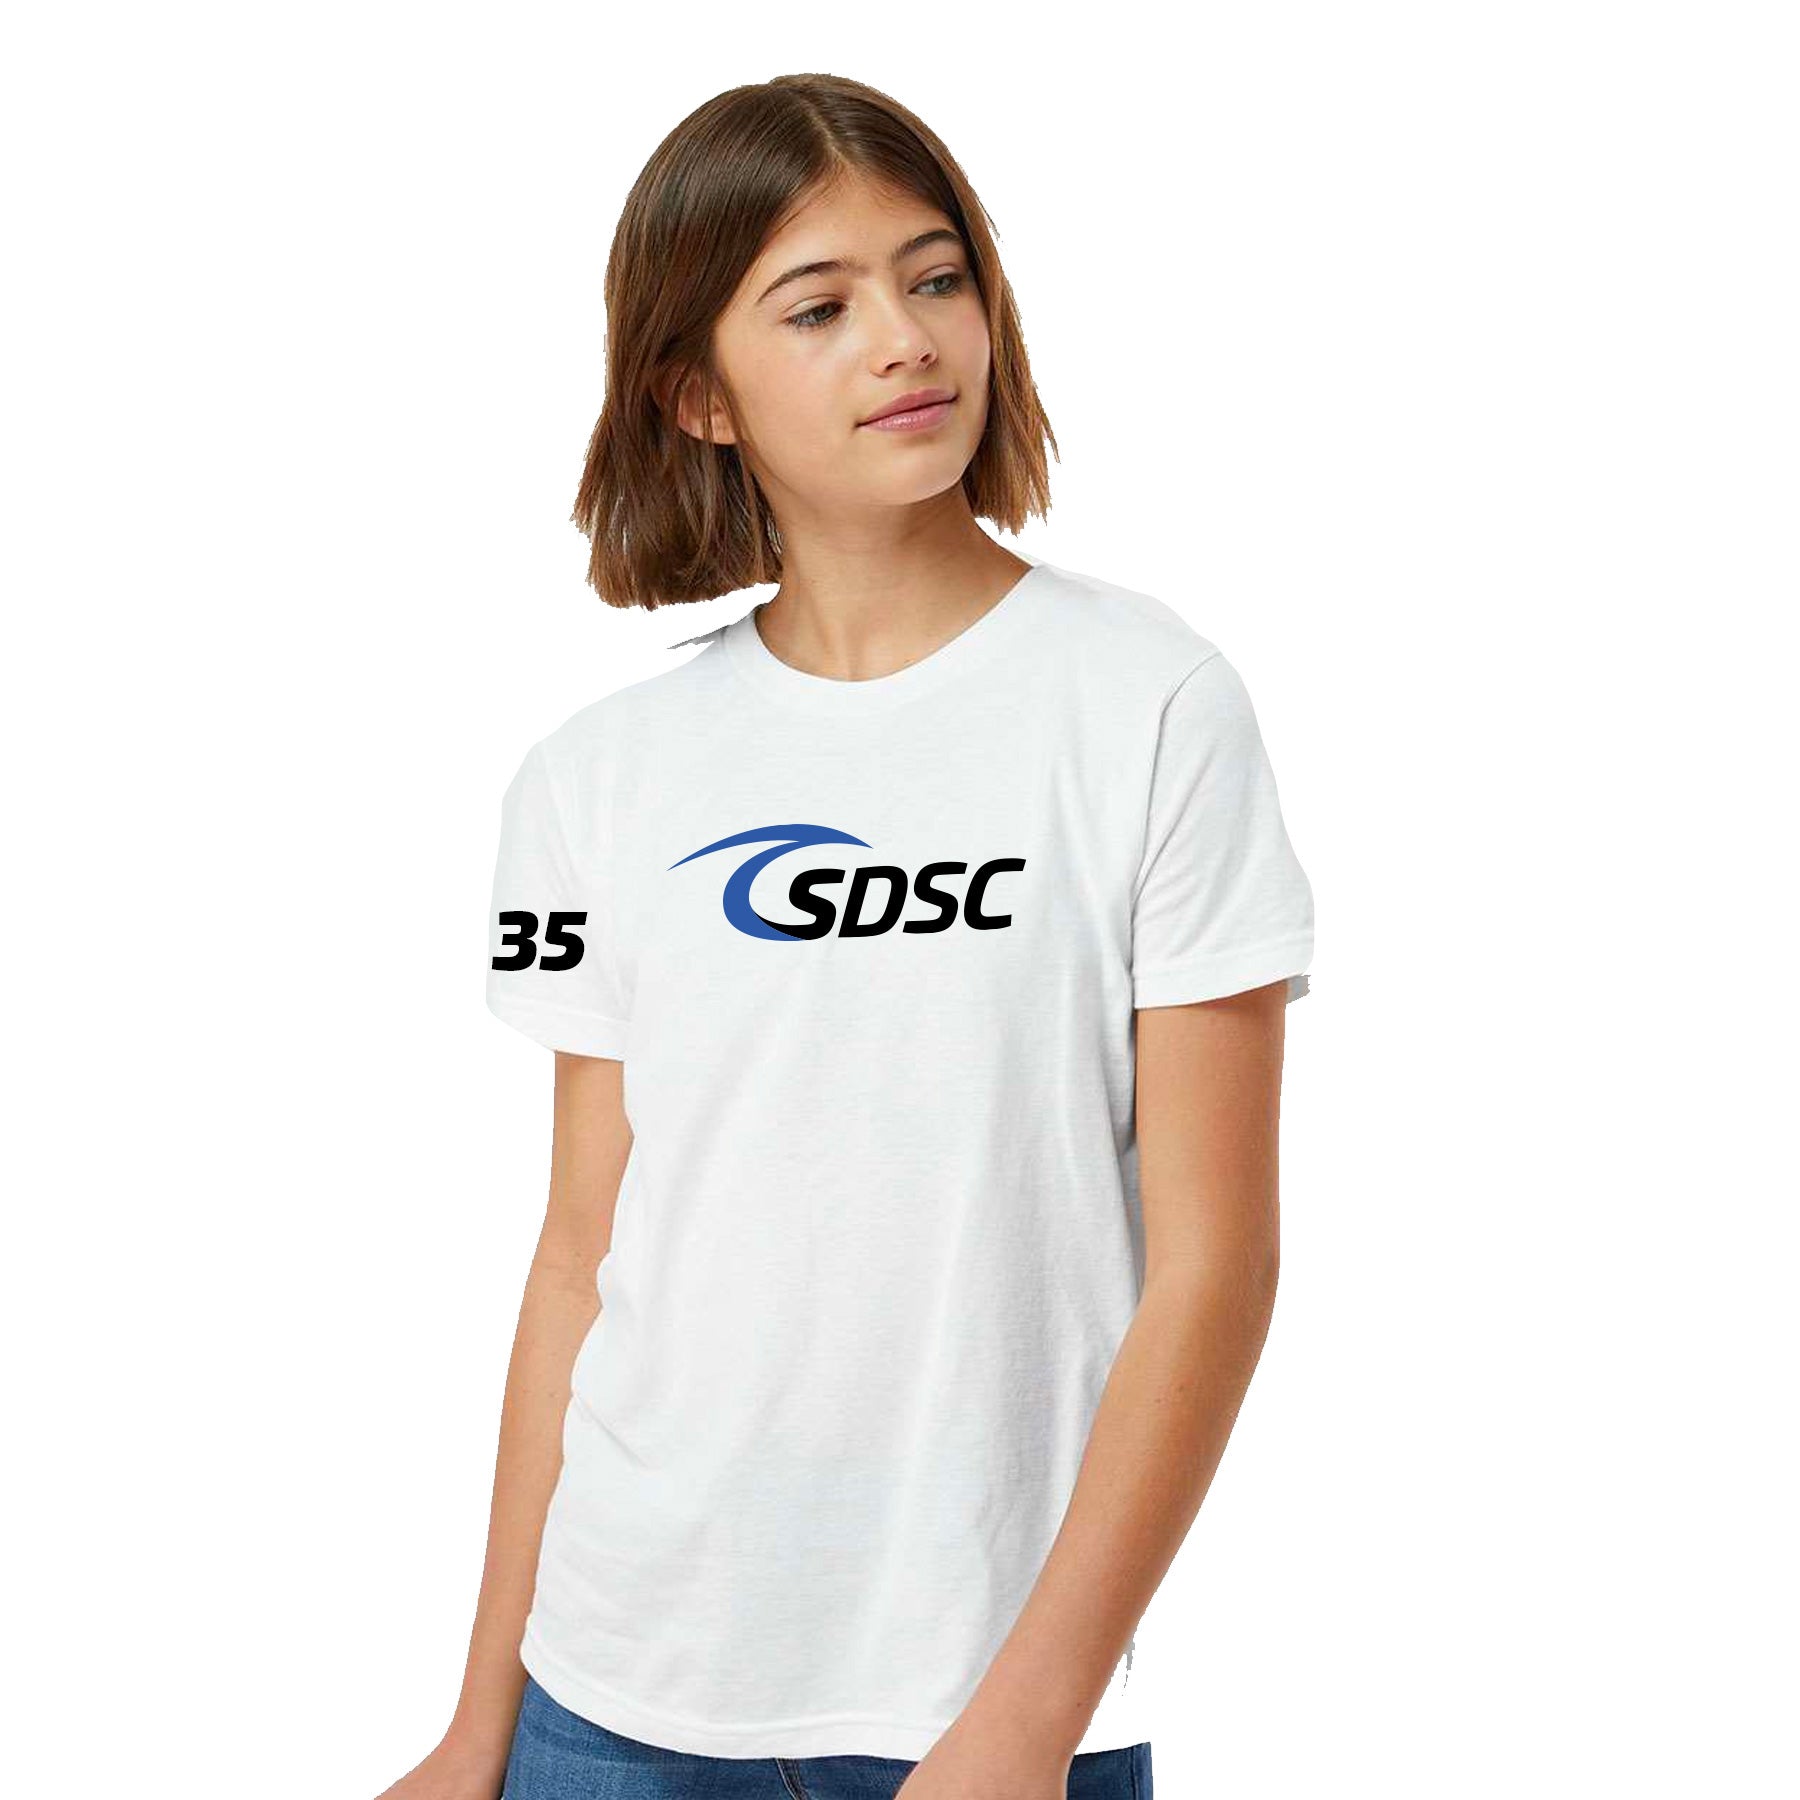 SDSC LOGO T-SHIRT